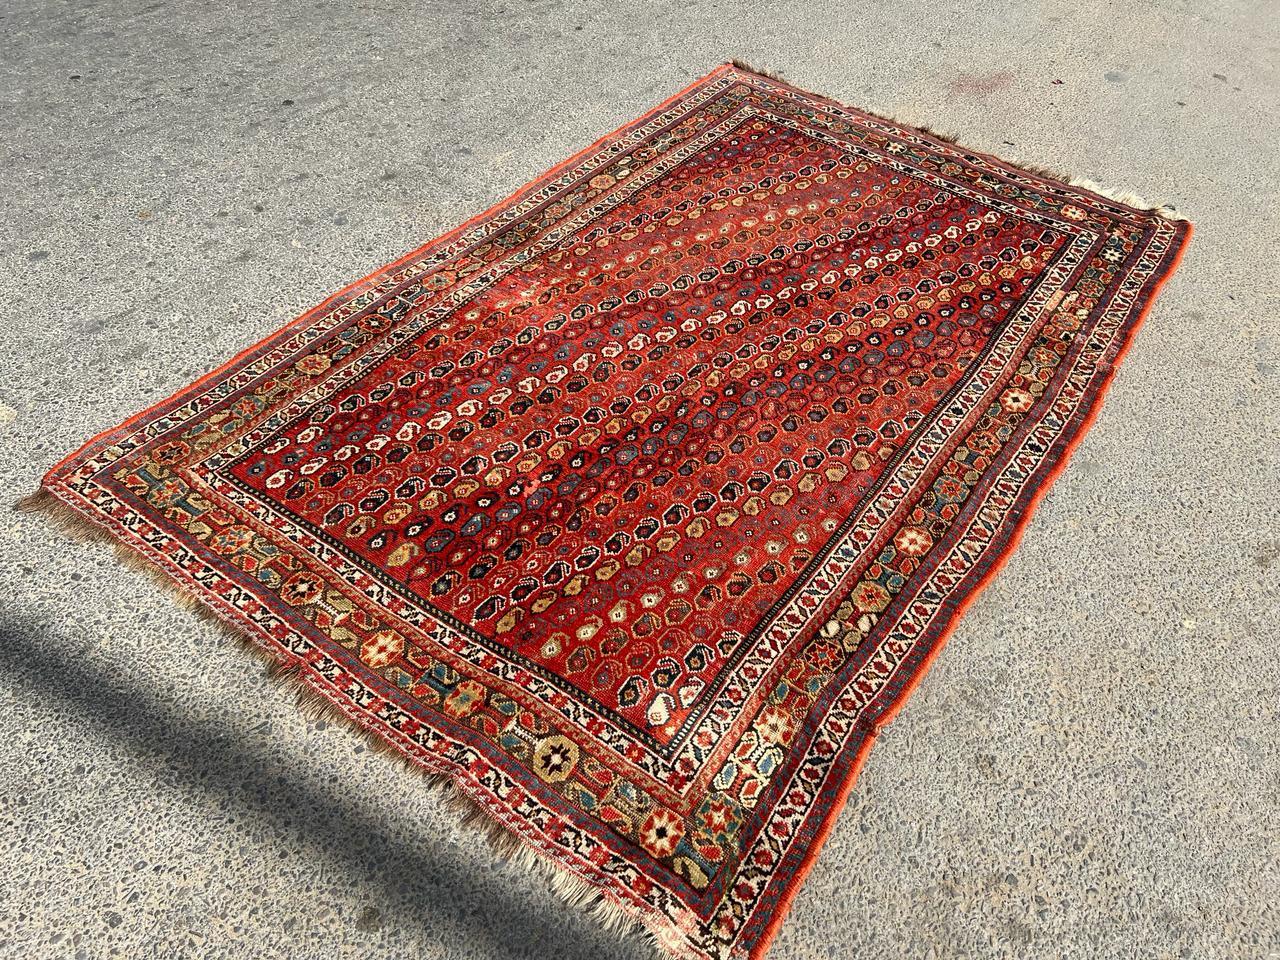 Entrez dans l'allure intemporelle de l'artisanat persan avec ce tapis persan ancien Khamseh fait à la main et datant des années 1900. Mesurant 5,1 pieds de largeur et 8,5 pieds de longueur (155cm x 259cm), ce tapis captivant présente une palette de